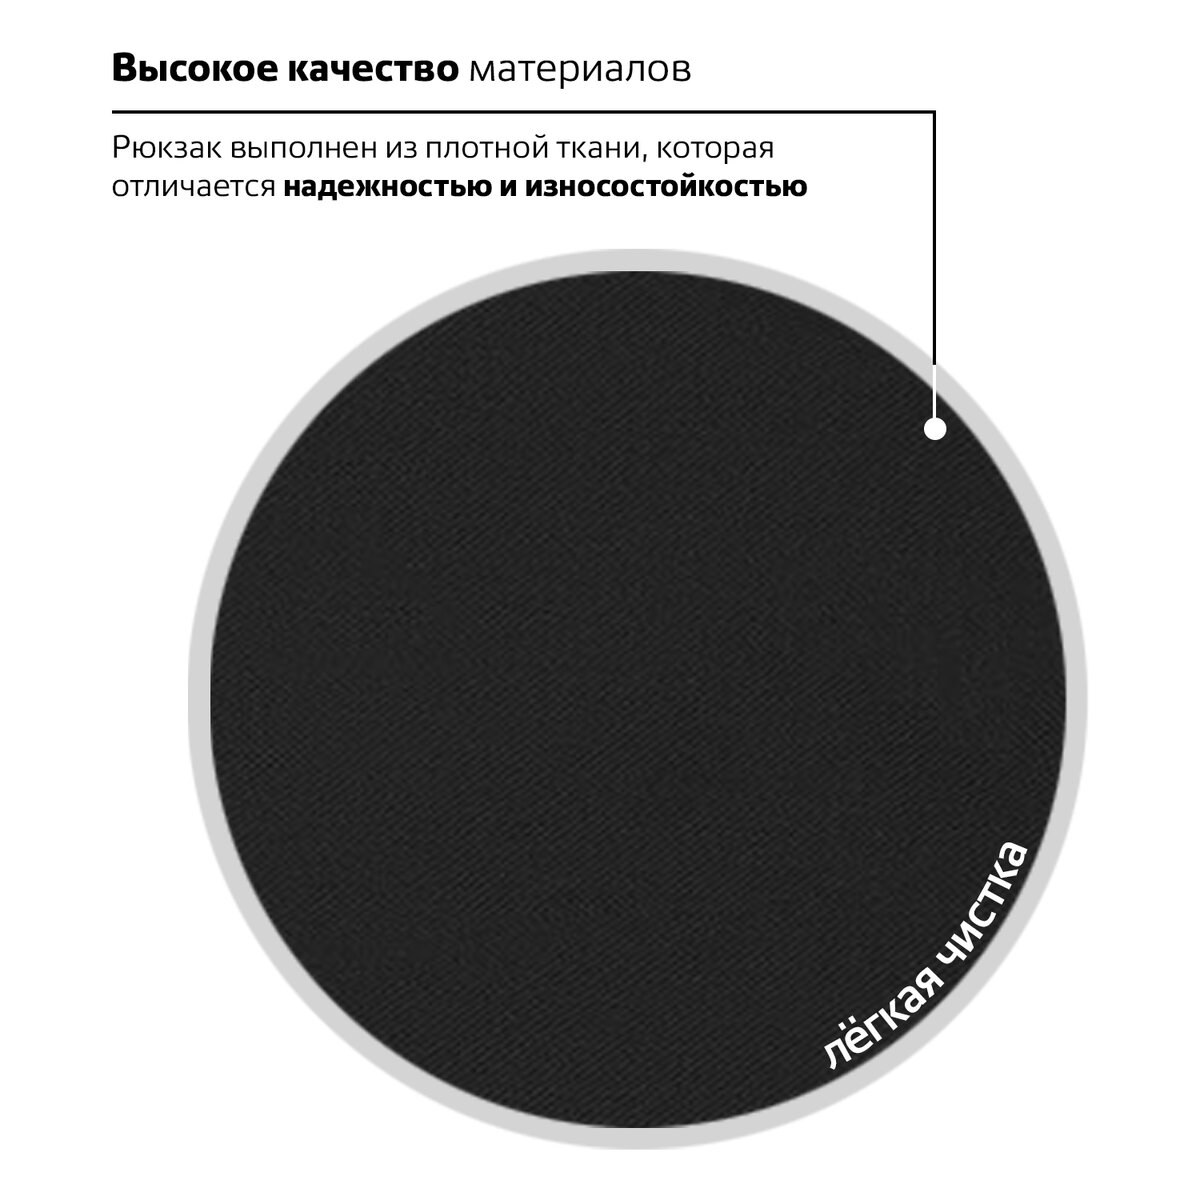 Рюкзак Brauberg Универсальный сити-формат один тон черный - фото 5